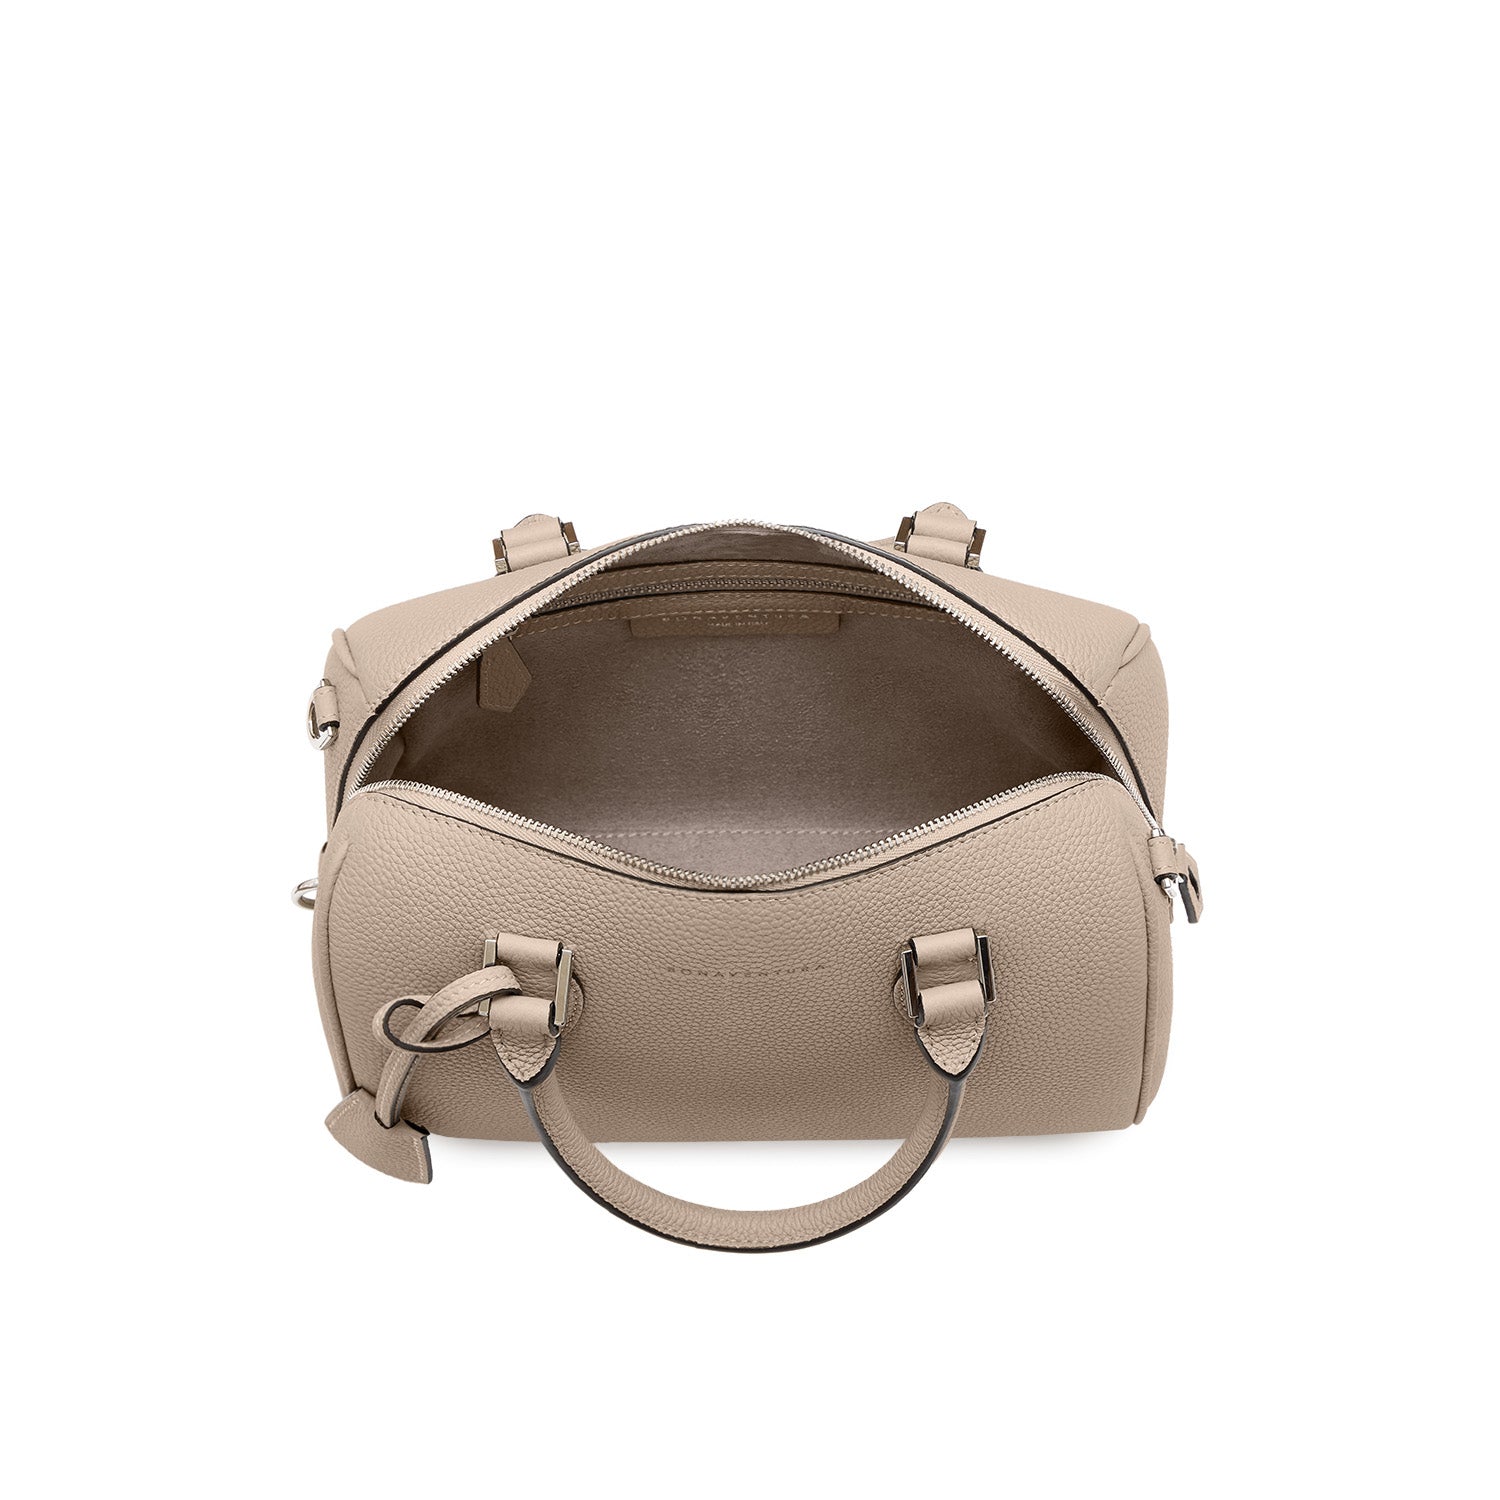 Valentina Boston Bag in Shrink Leather (Mini)